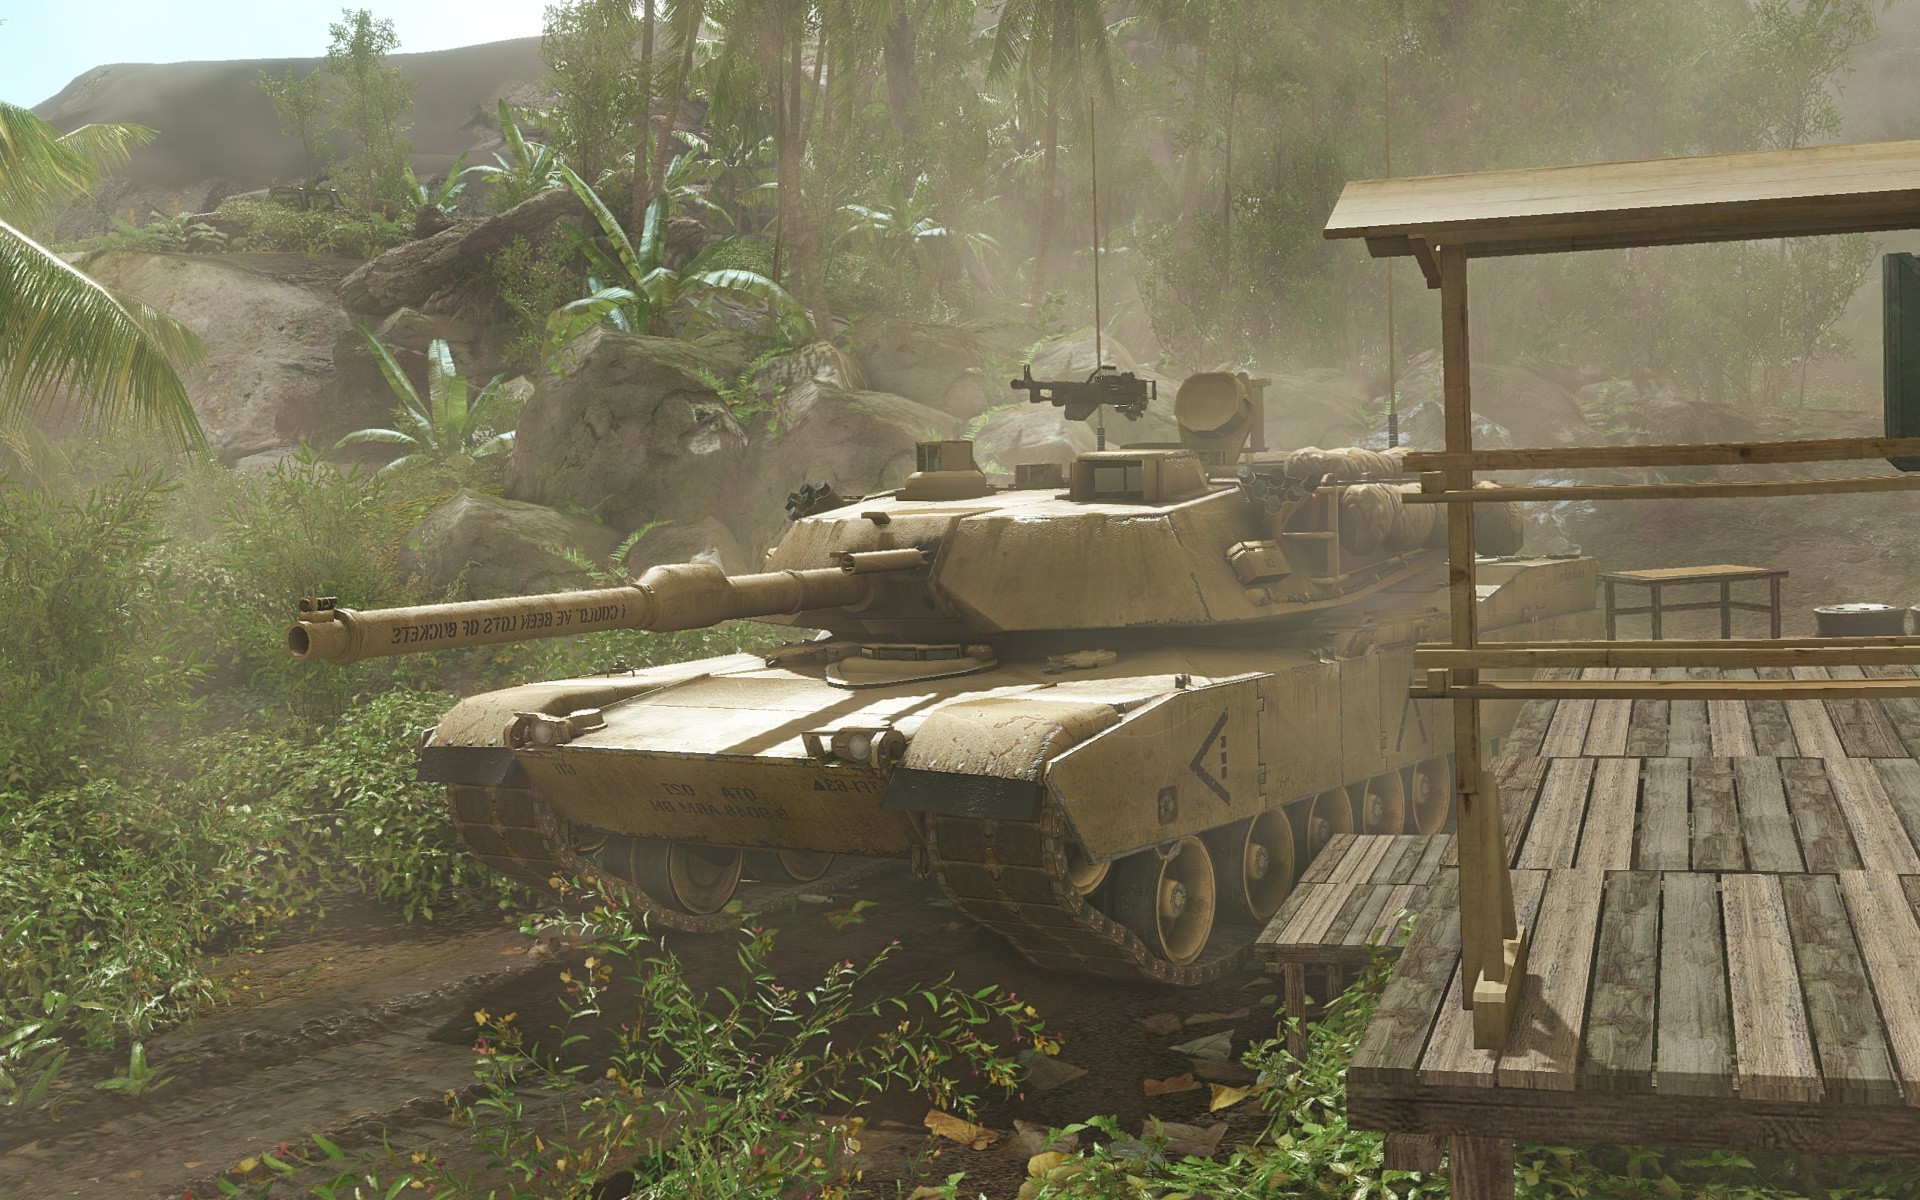 abrams battle tank video game